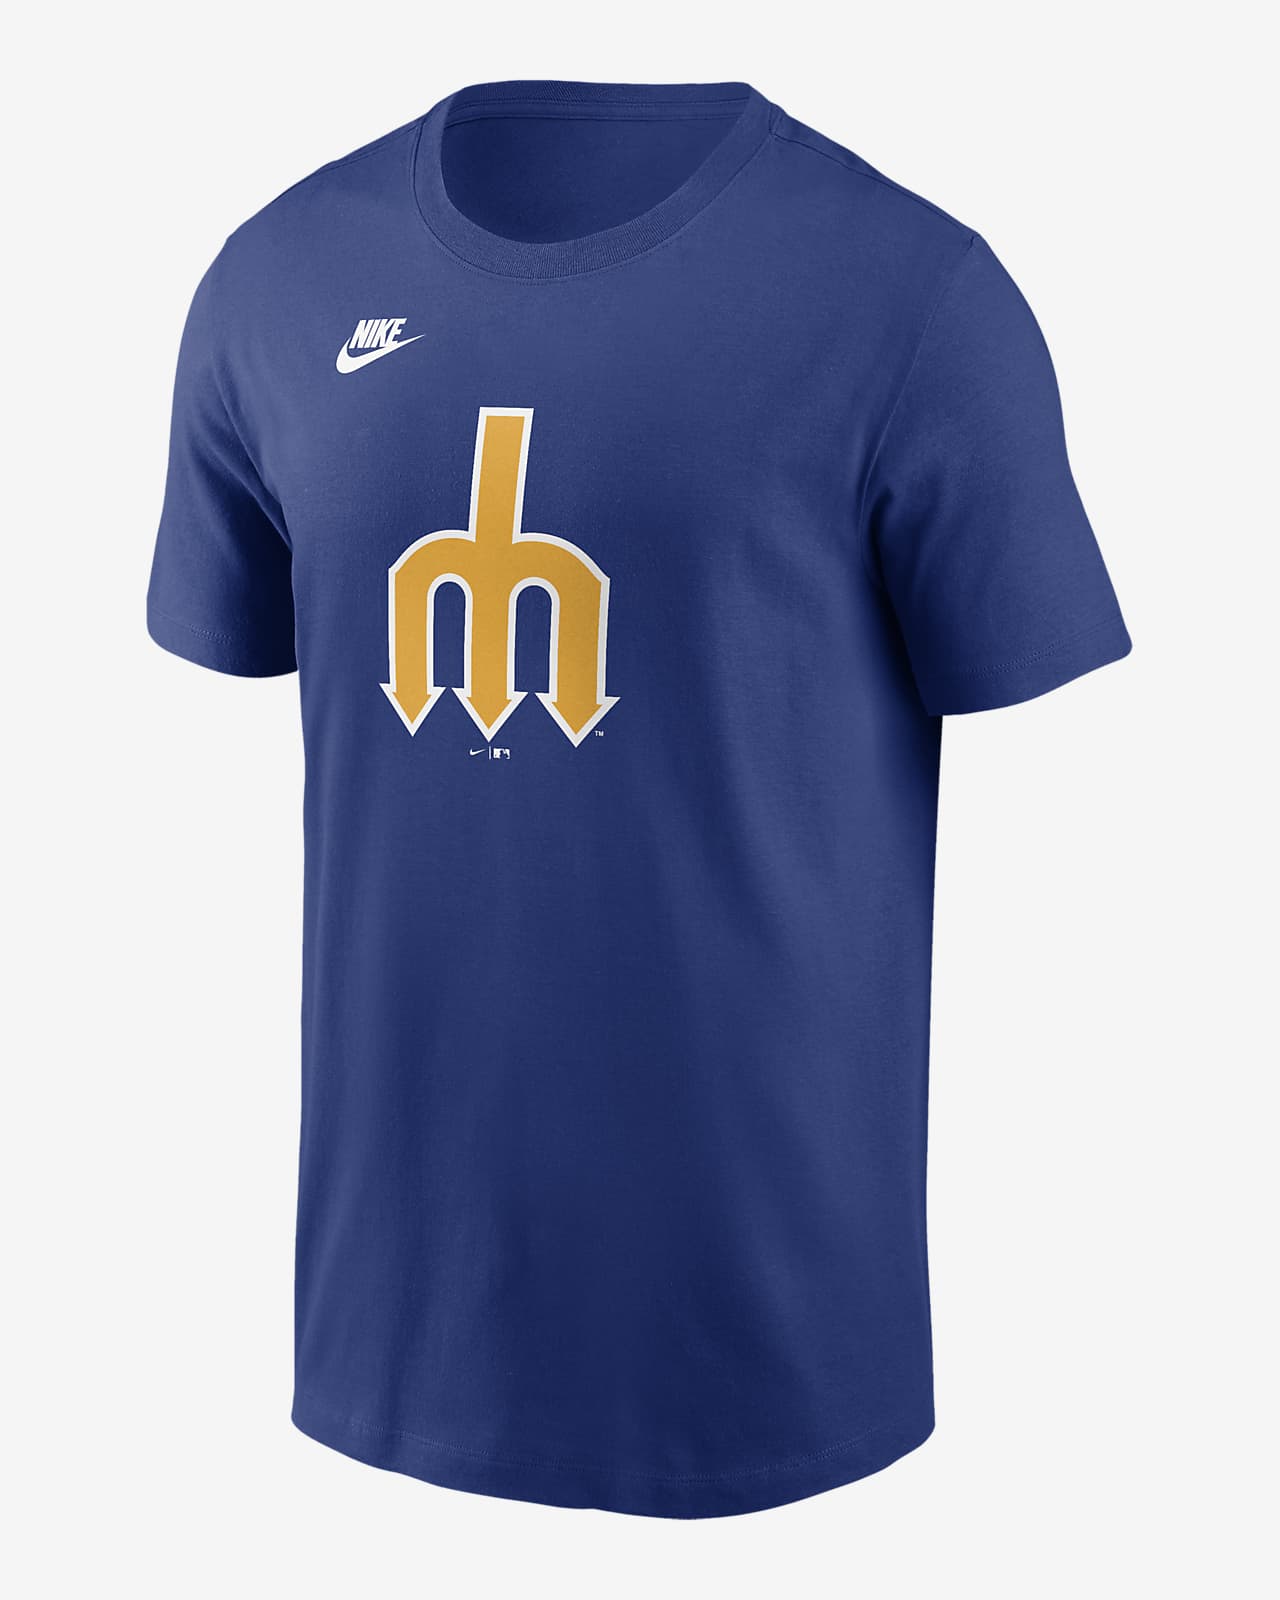 Seattle Mariners Cooperstown Logo Men's Nike MLB T-Shirt